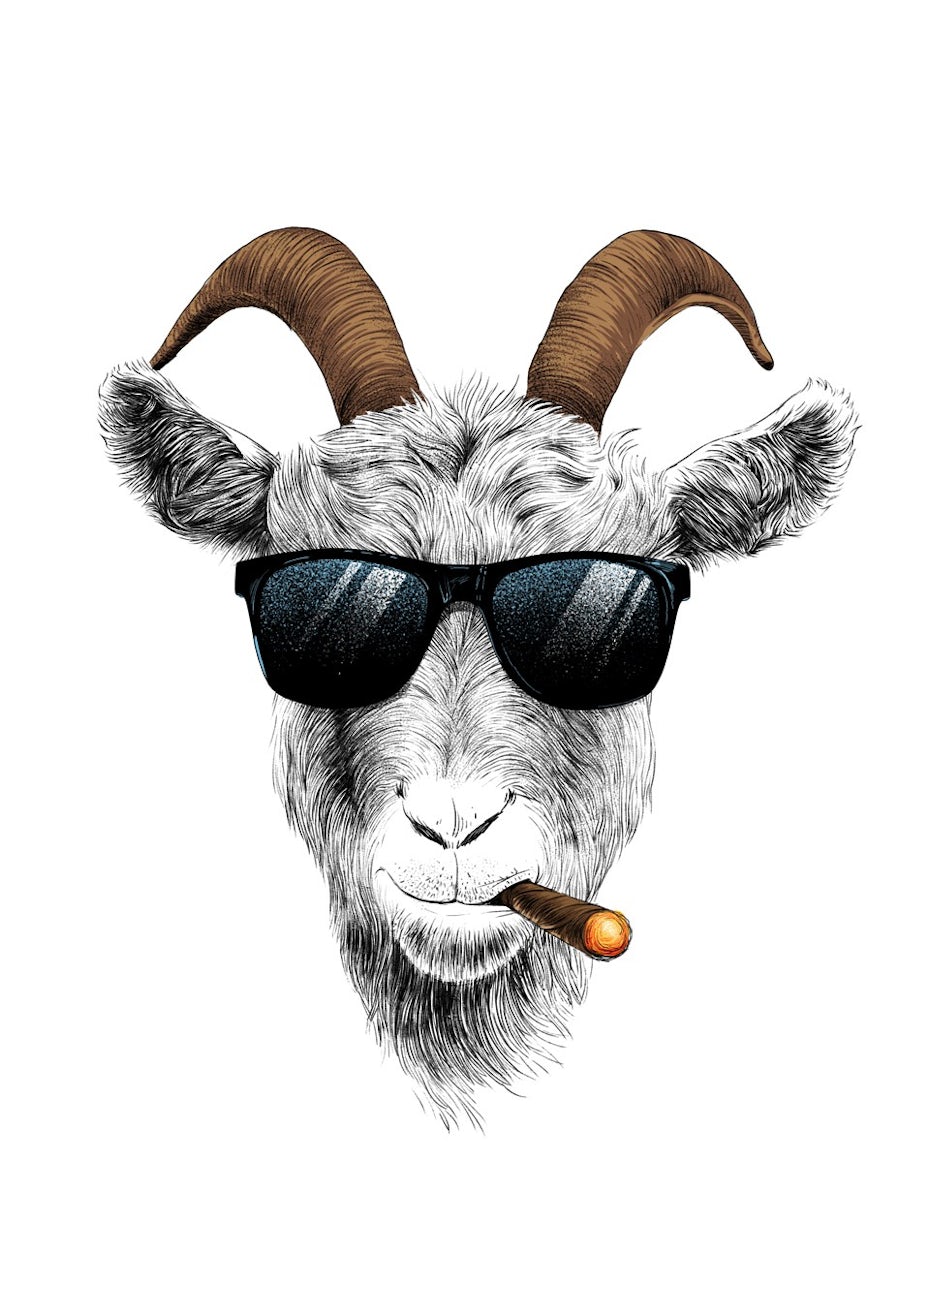 Goat smoking cigar